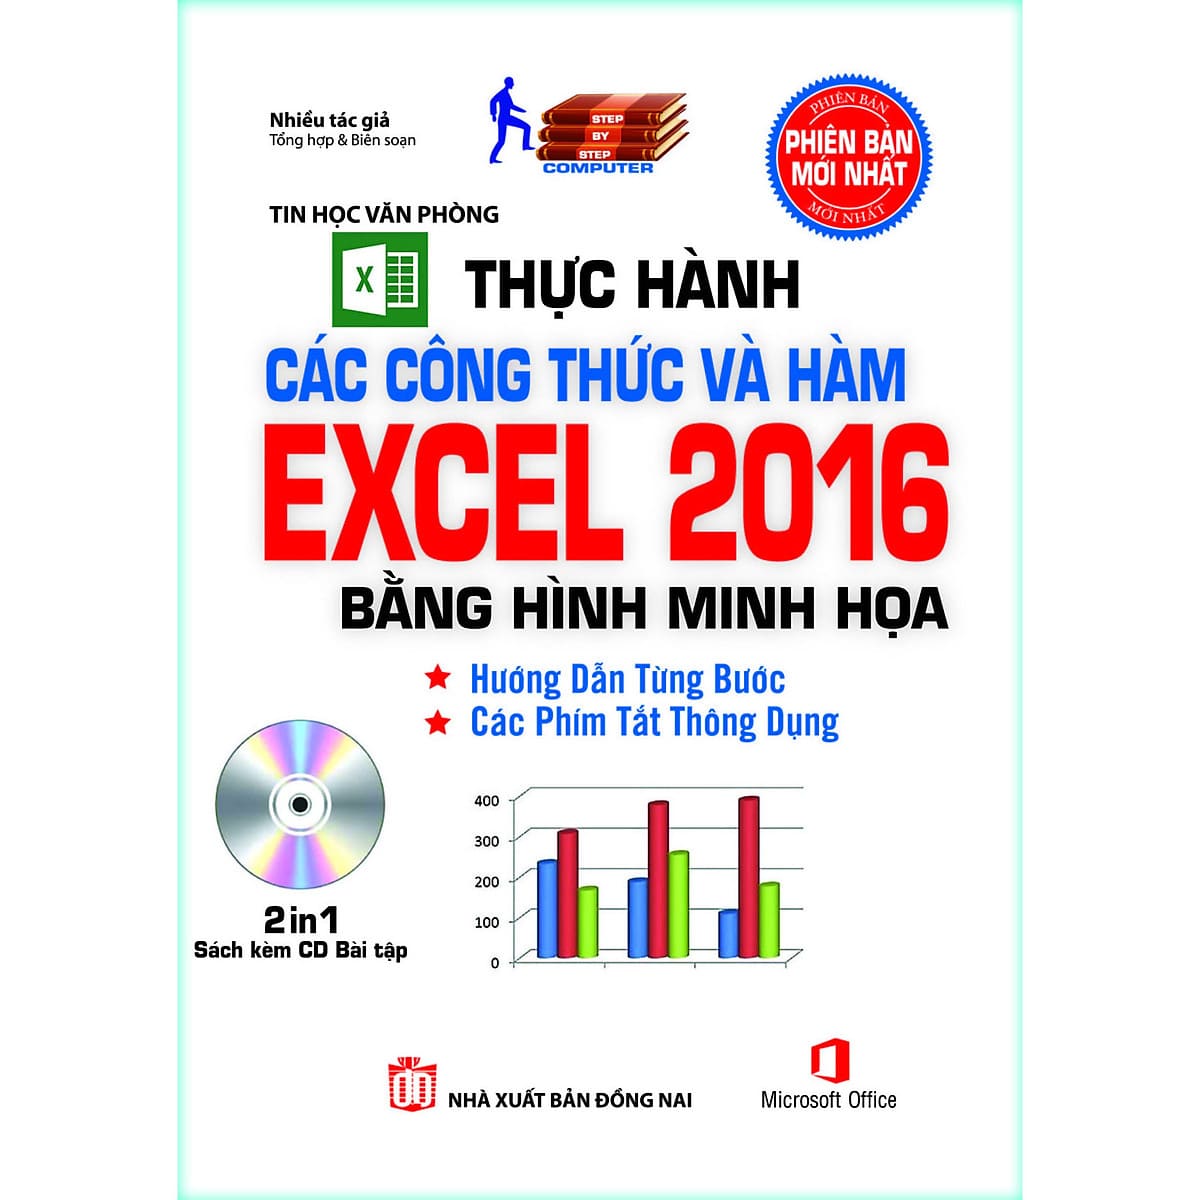 2.Thực Hành Các Công Thức Và Hàm Excel 2016 Bằng Hình Minh Họa-min